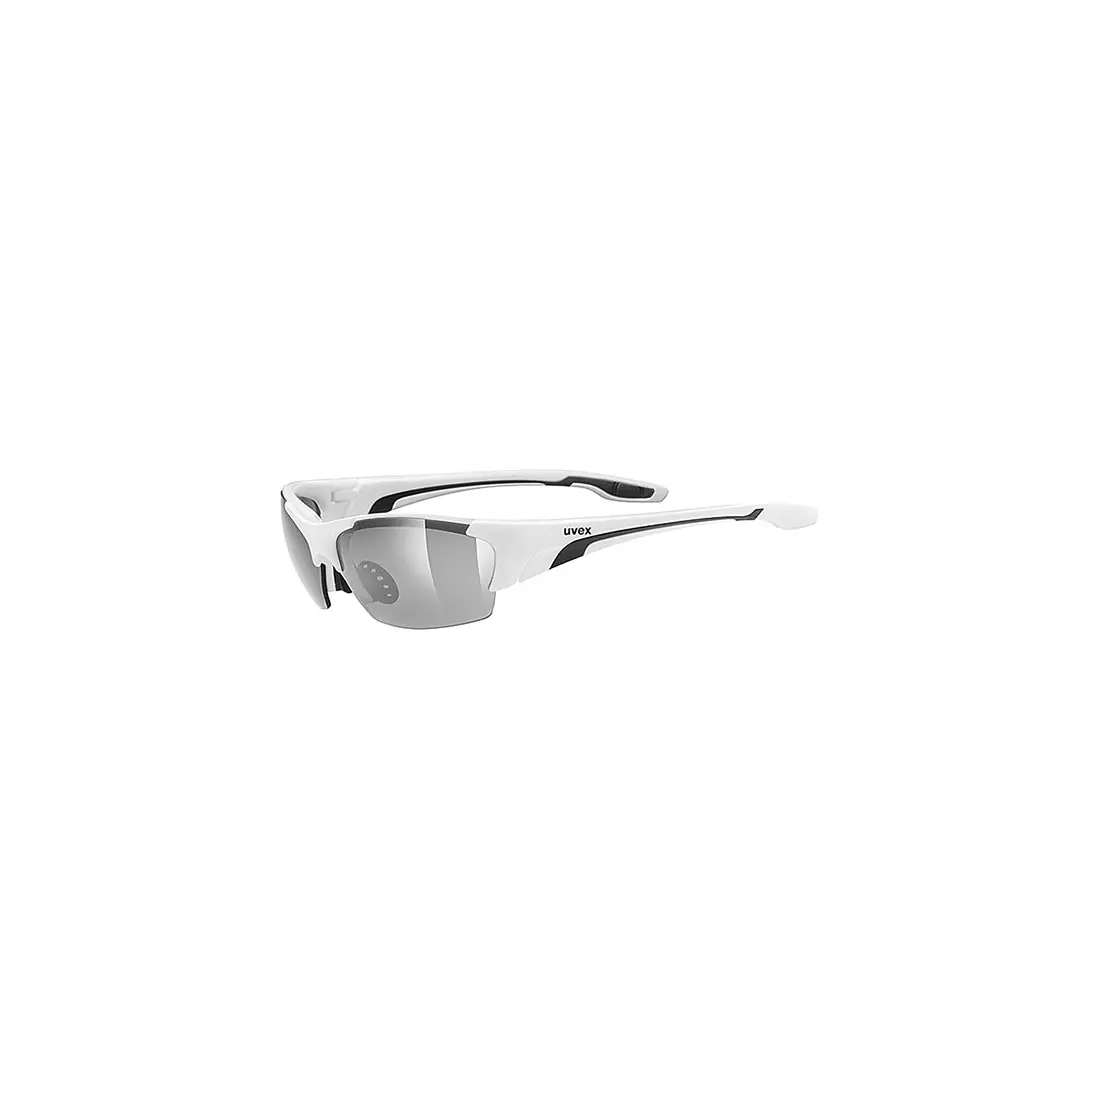 Cyklistické/športové okuliare Uvex Blaze III vymeniteľné sklá biele 53/0/604/8216/UNI SS19